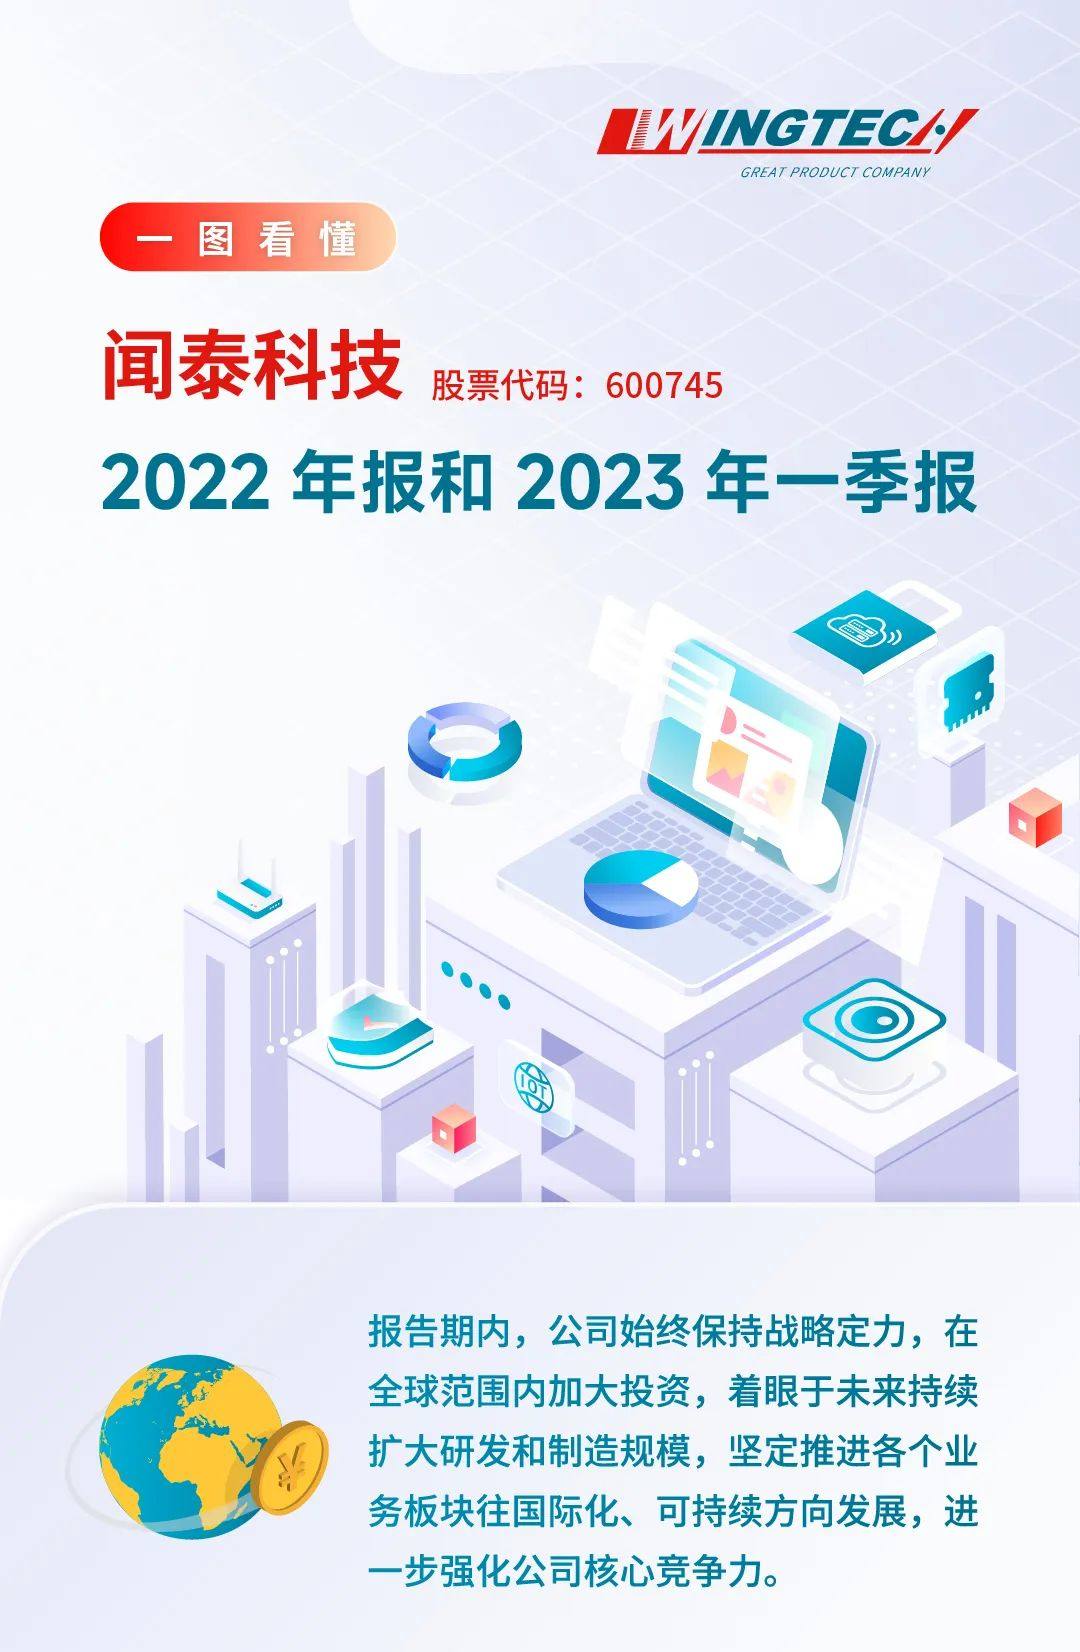 一图看懂闻泰科技2022年报和2023年一季报